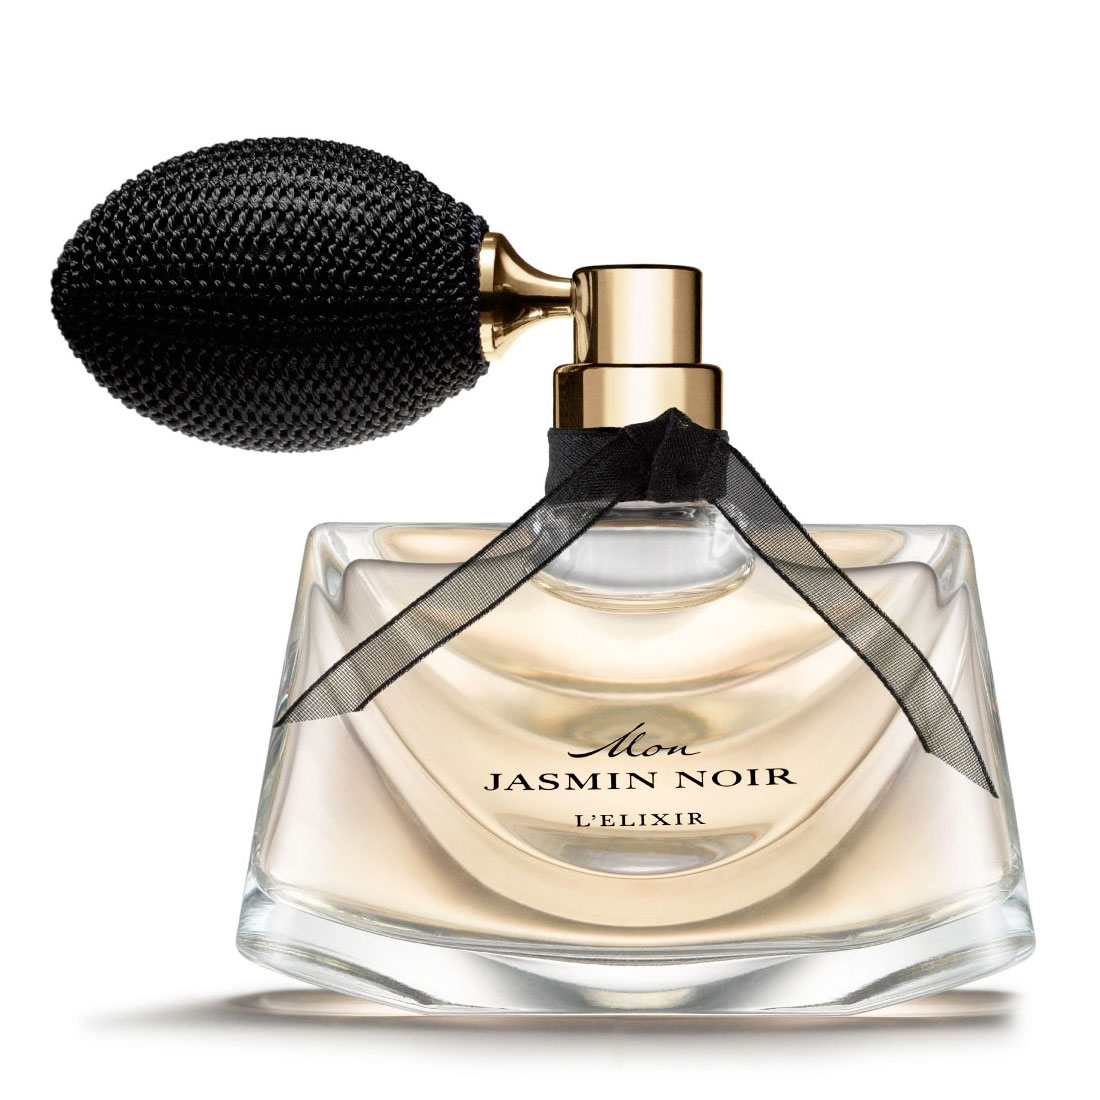 Mon Jasmin Noir L'Elixir Eau de Parfum Bvlgari Image